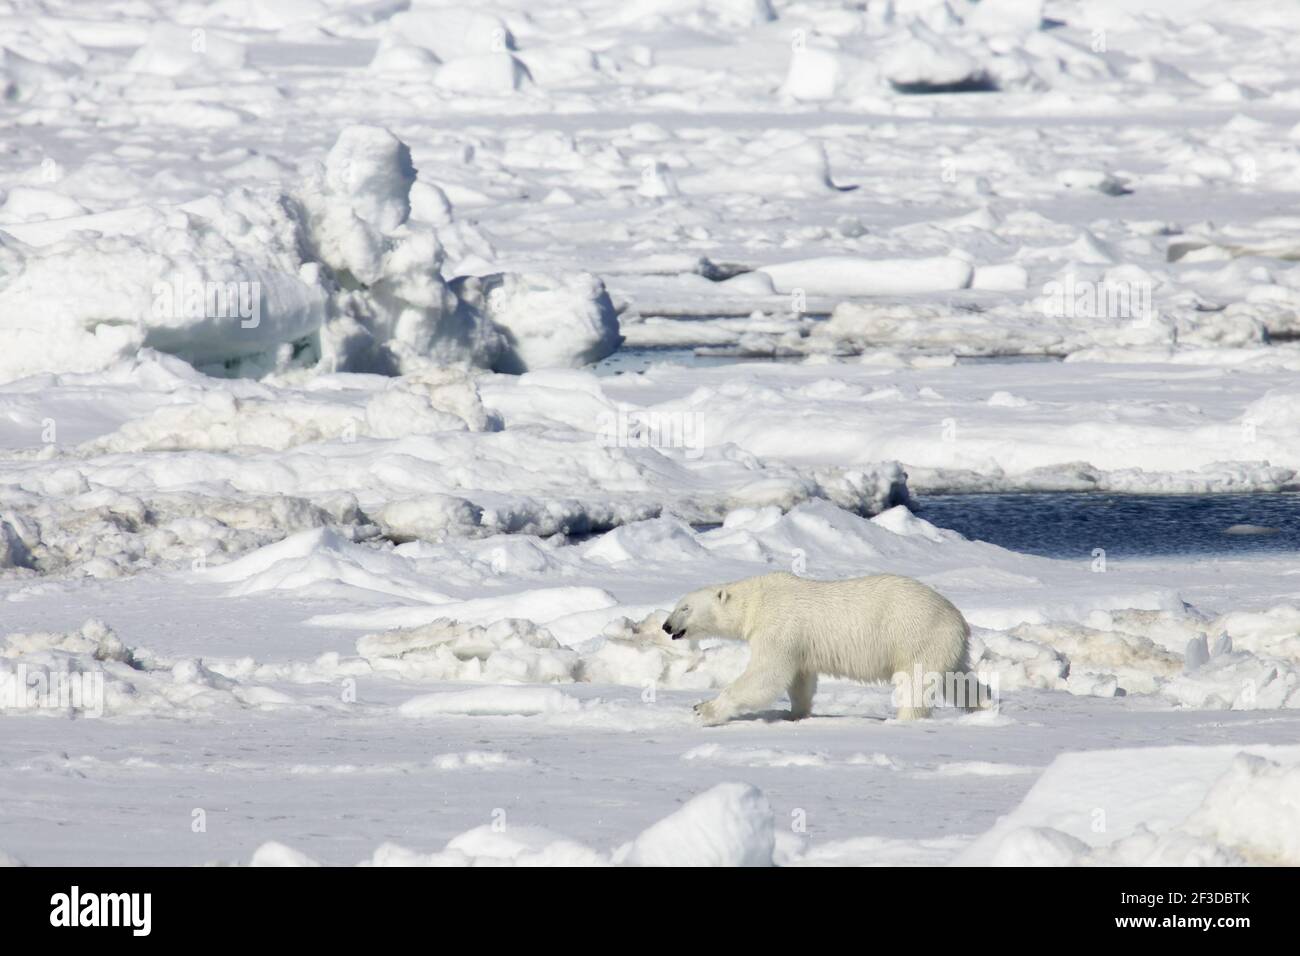 Ours polaire - sur la mer IceUrsus maritimus Svalbard (Spitsbergen) Norvège MA001848 Banque D'Images